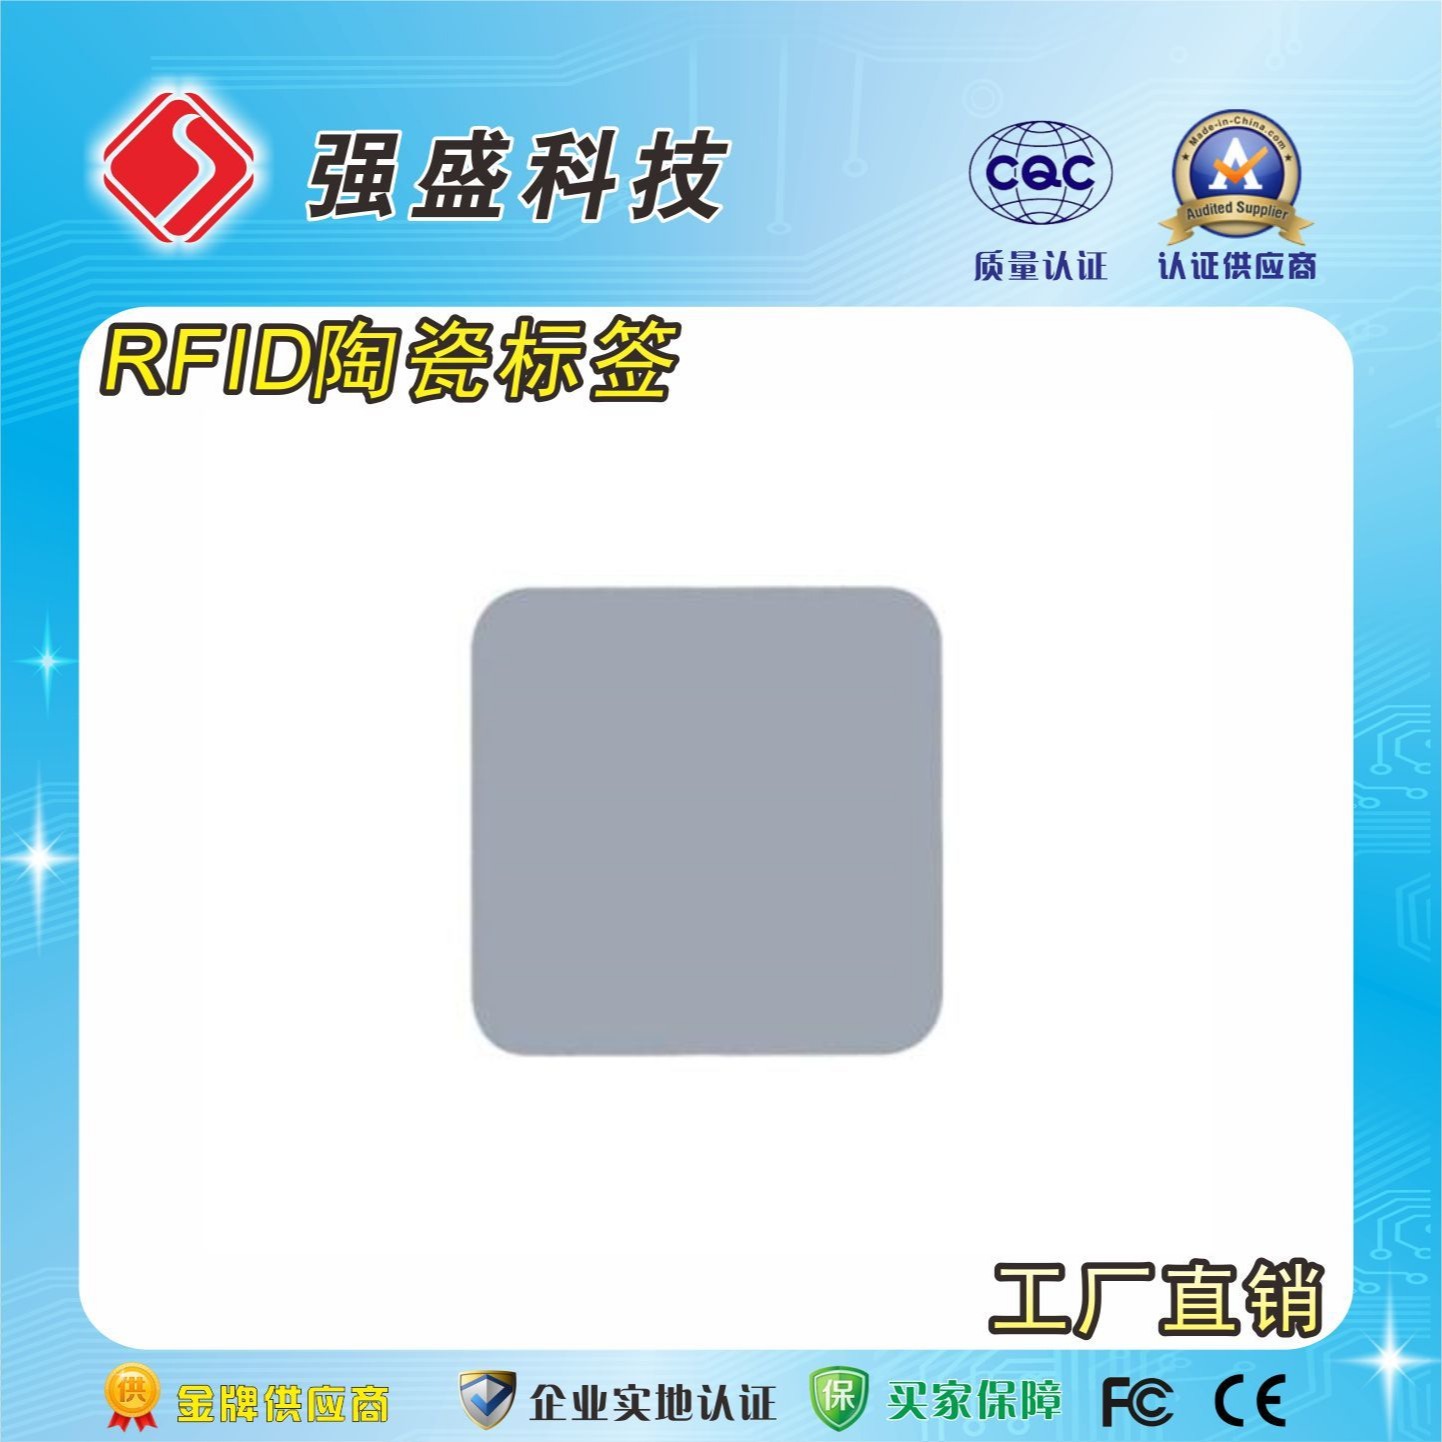 供应超高频RFID陶瓷标签 抗金属陶瓷标签 金属托盘管理标签图片